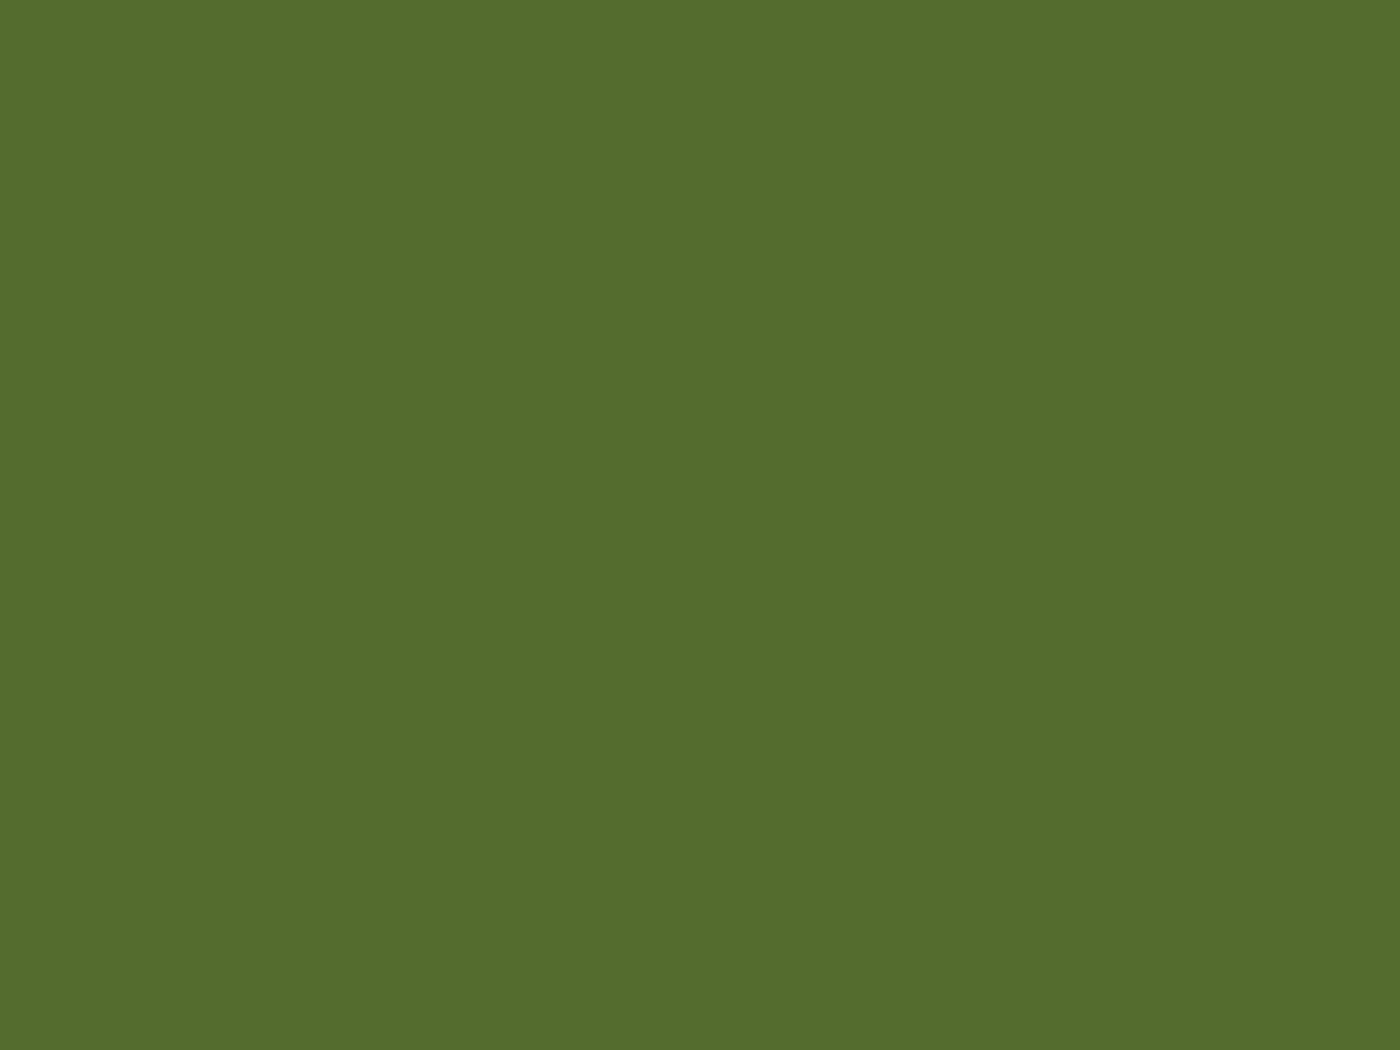 Solid Olive Green Background For Desktop